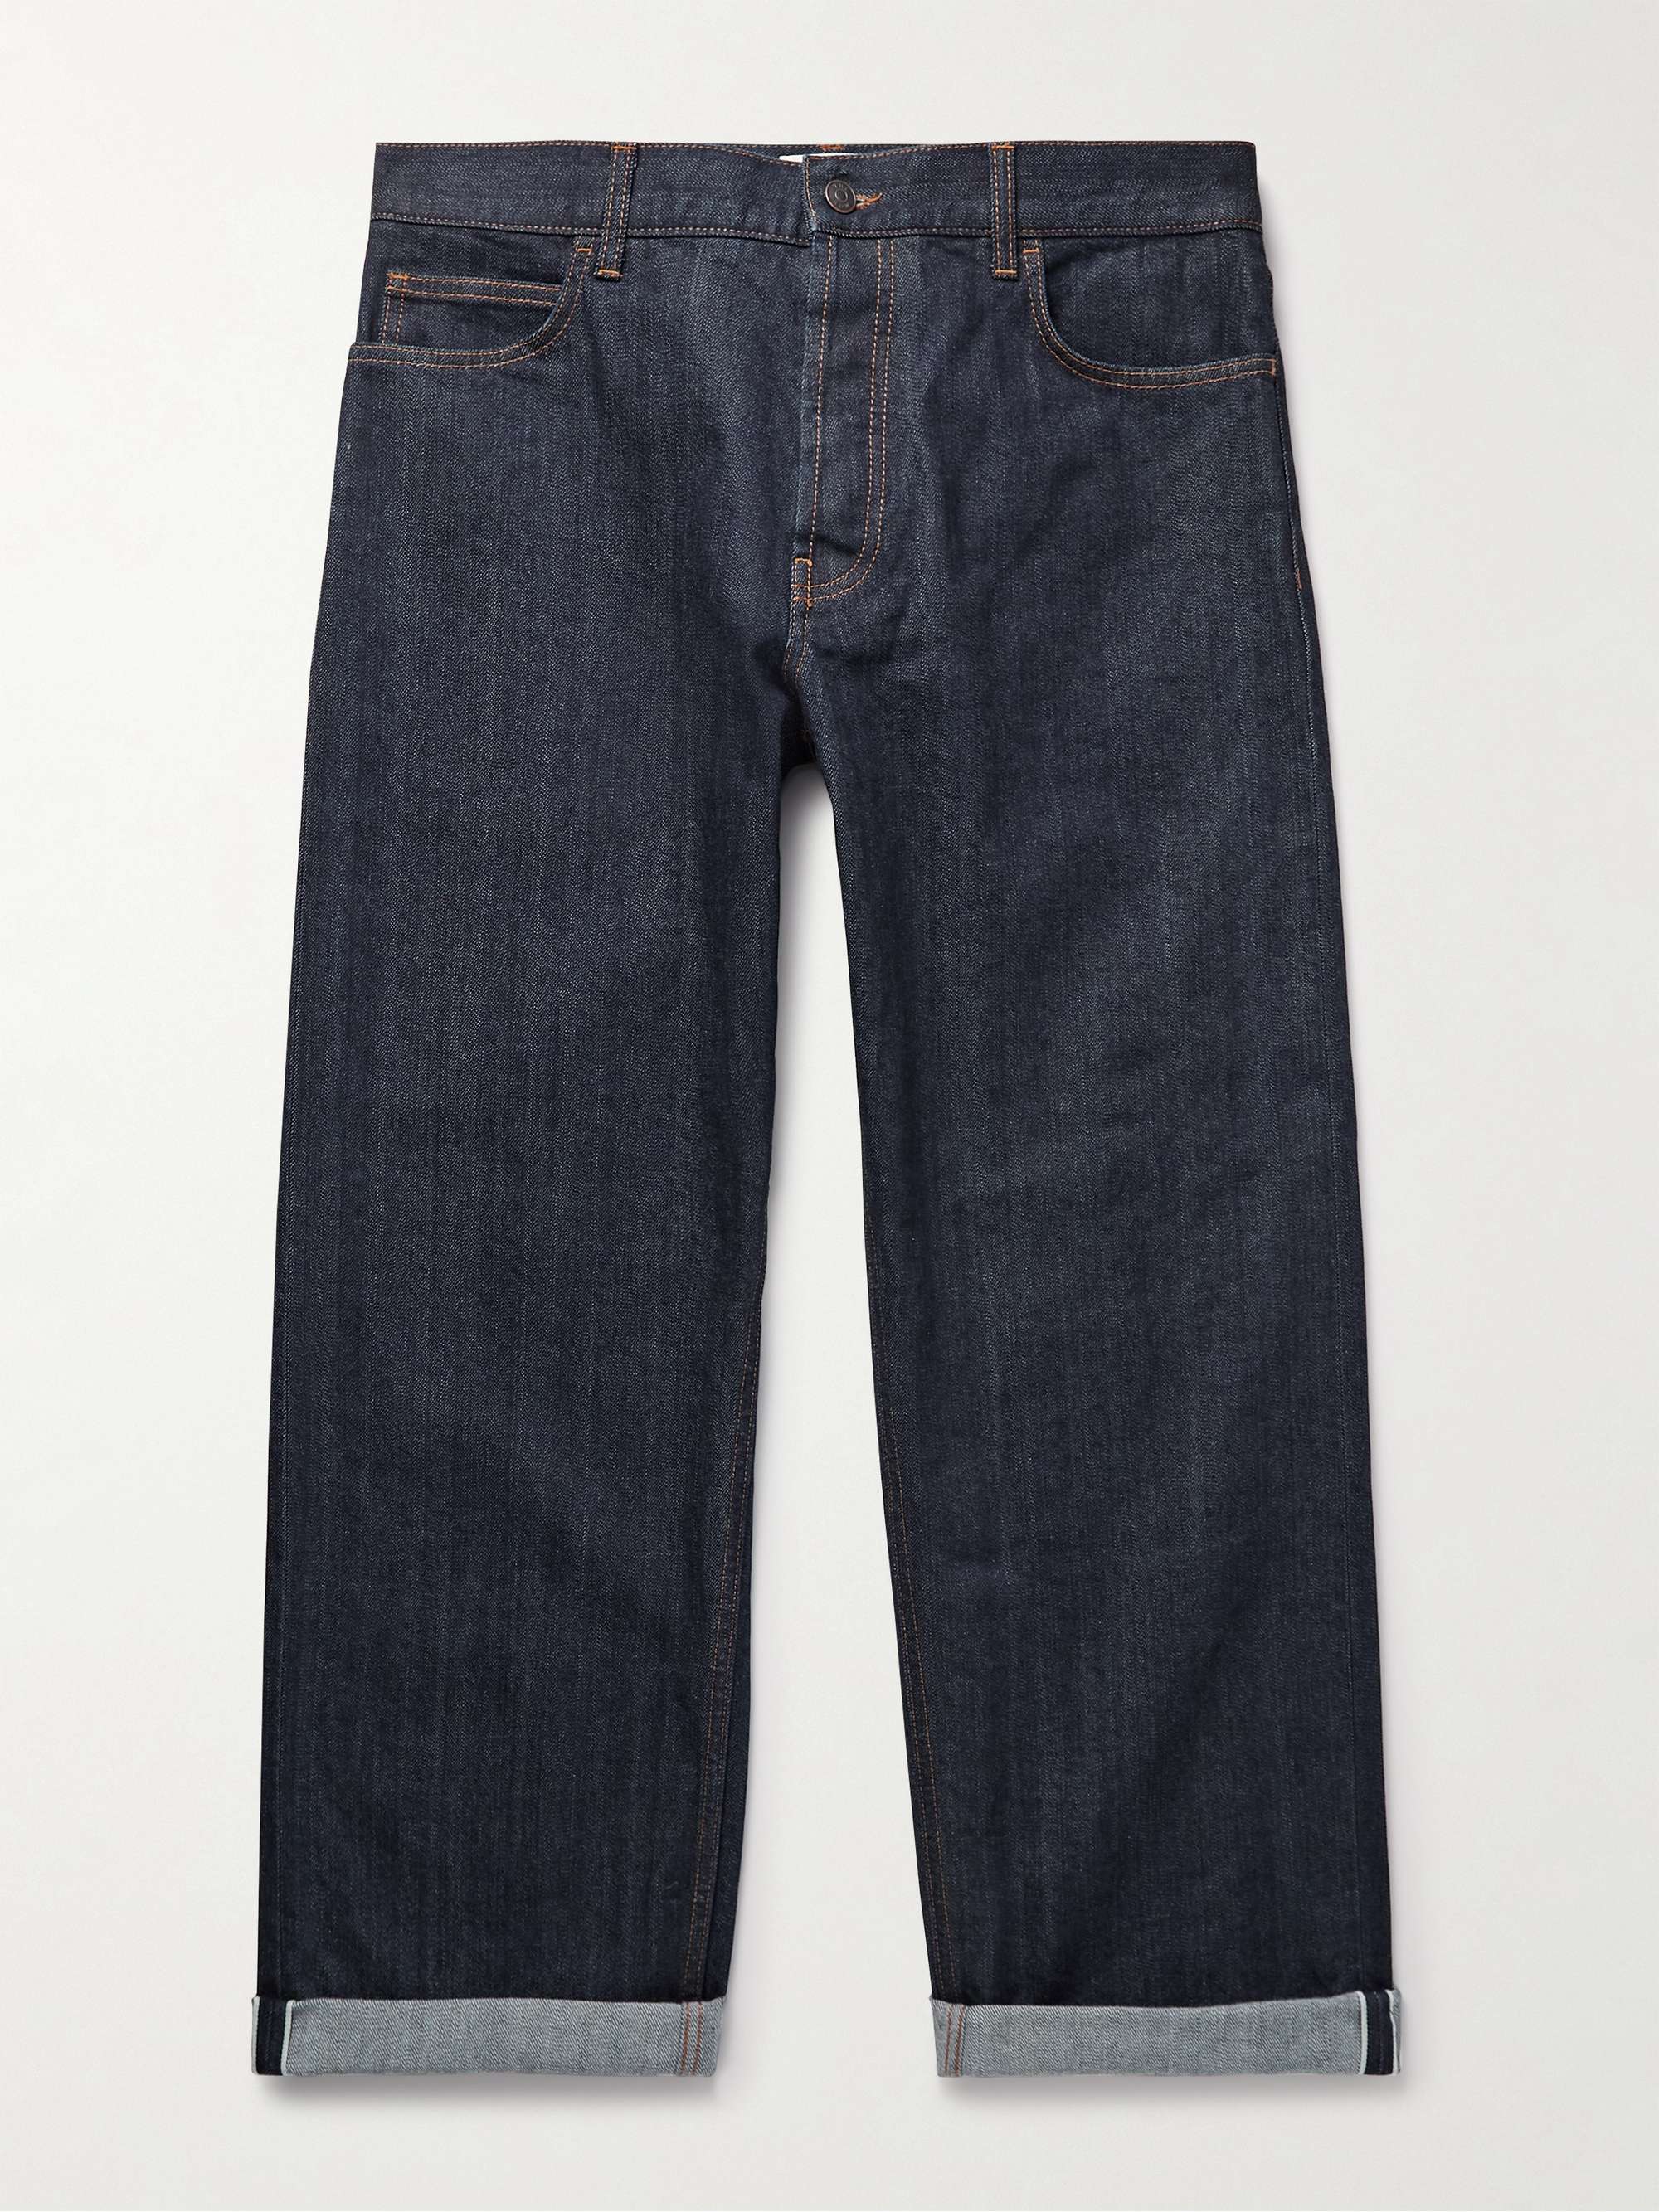 Denims For Men: Buy Denim Clothing's for Men at Best Price | GAS Jeans